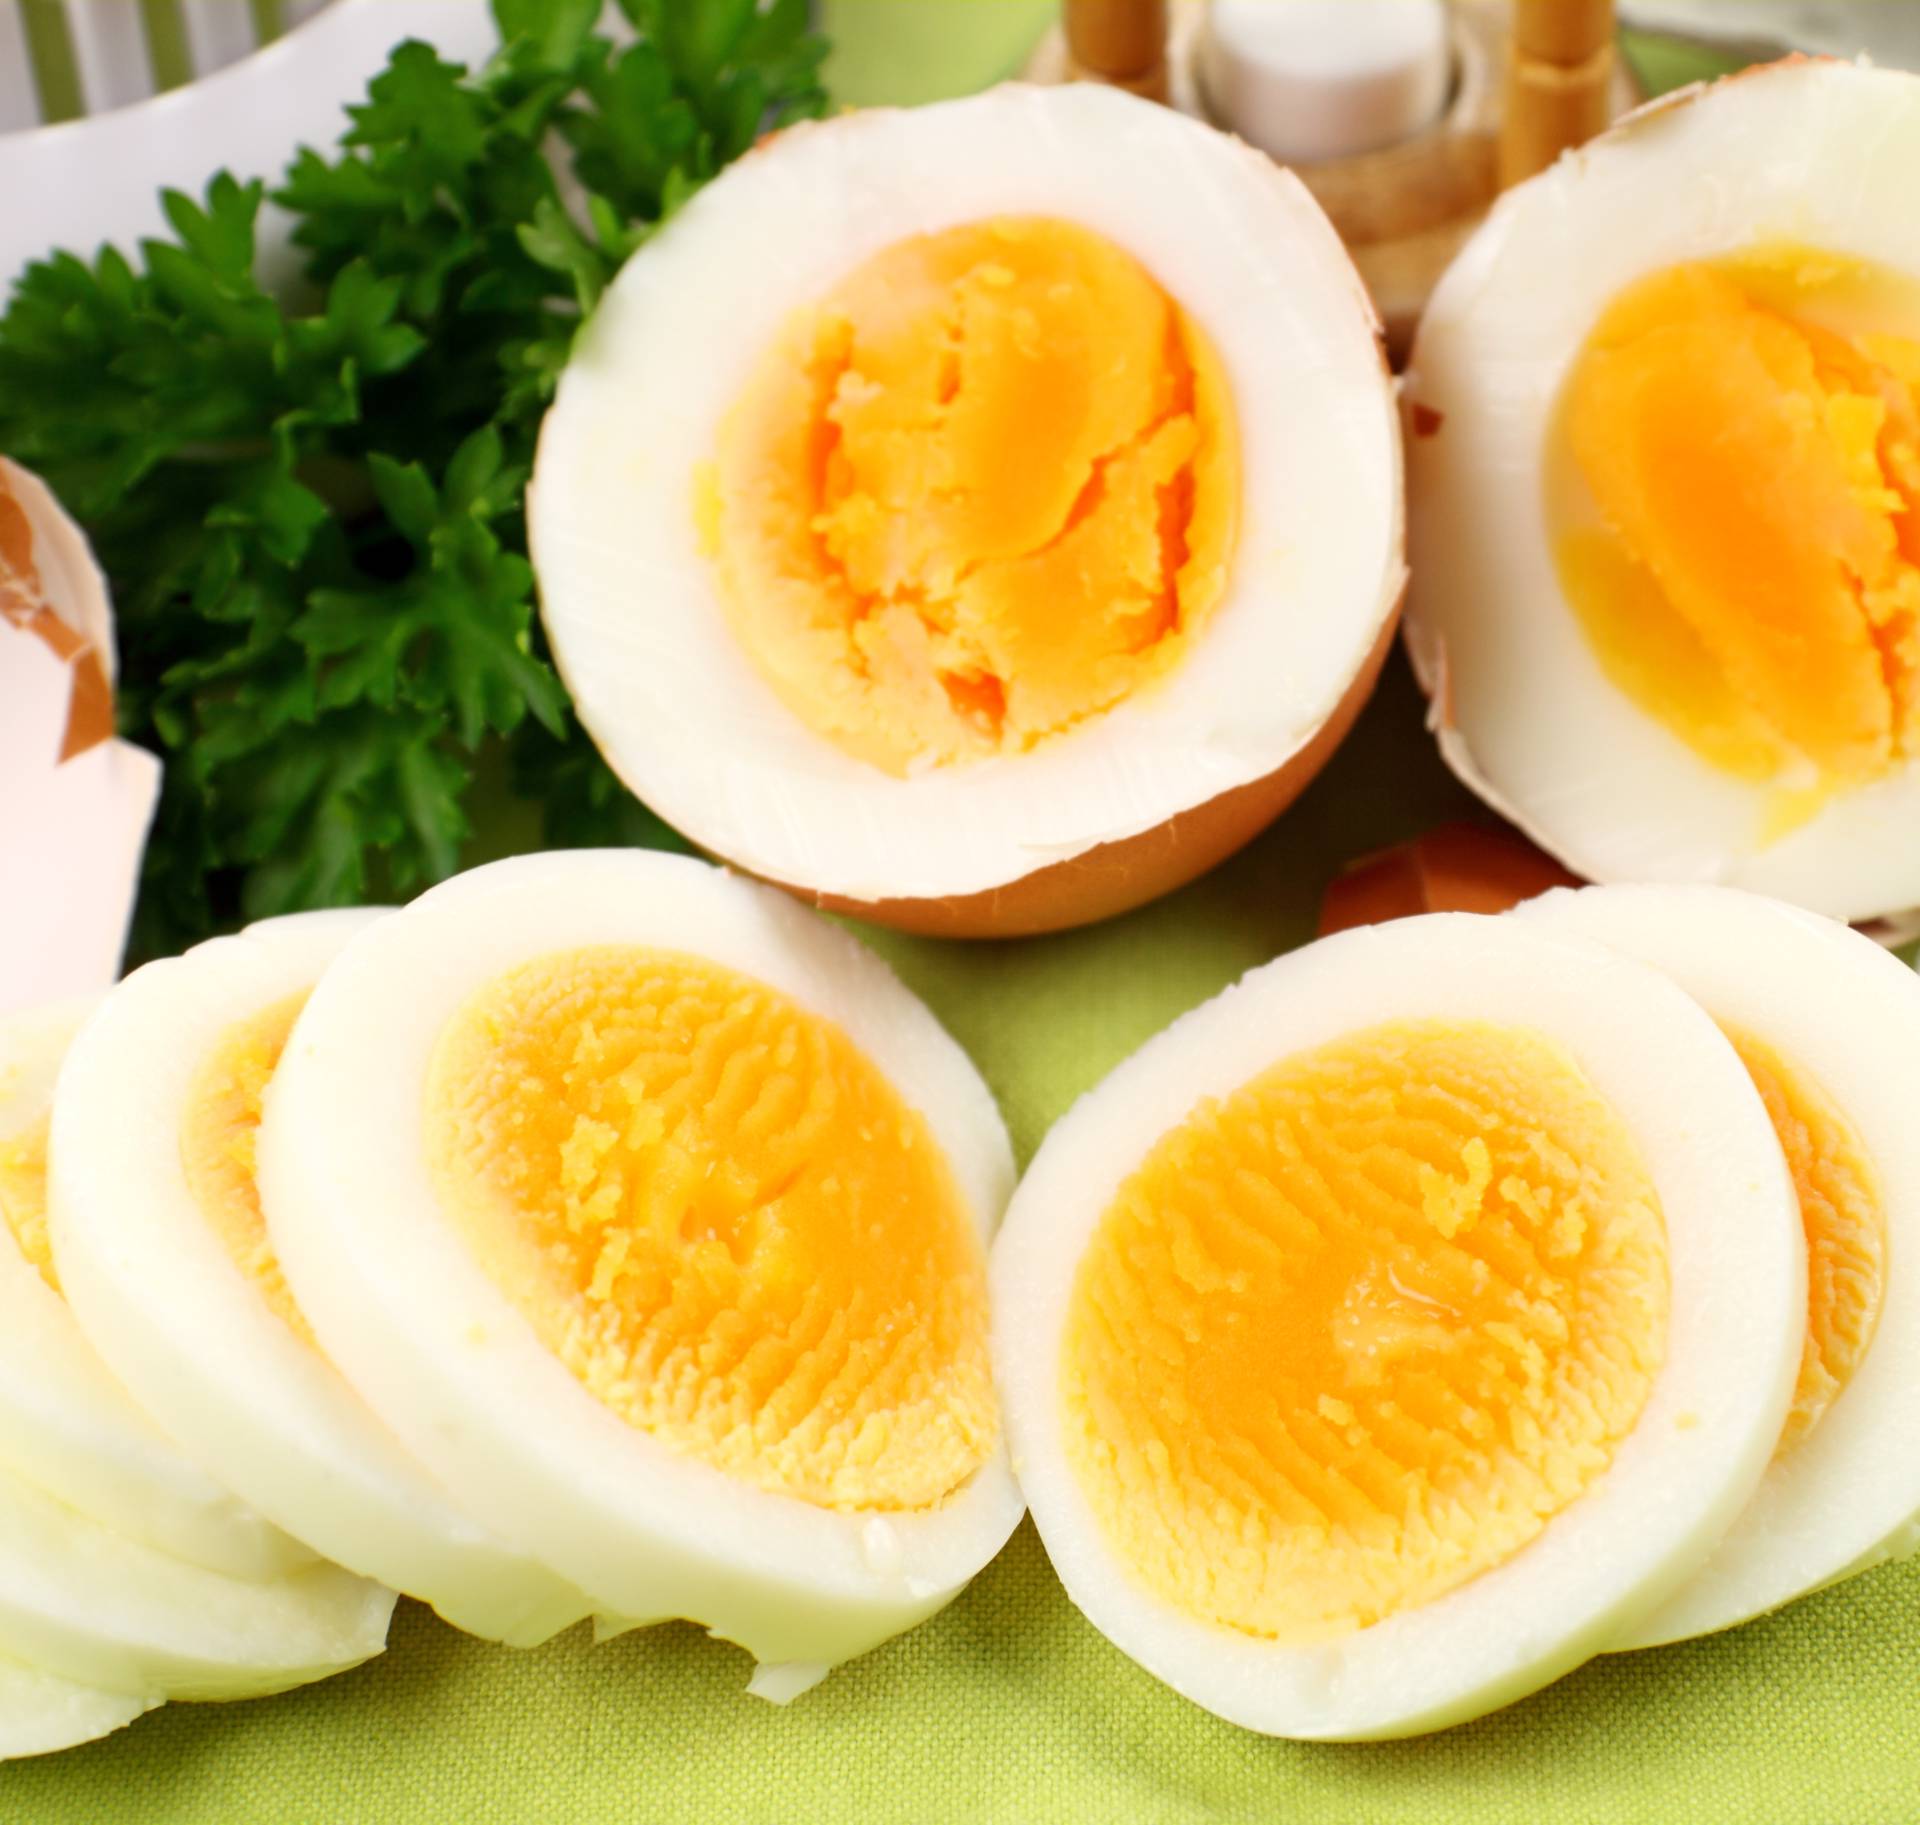 12 stvari će se dogoditi vašem tijelu - jedete li jaja svaki dan